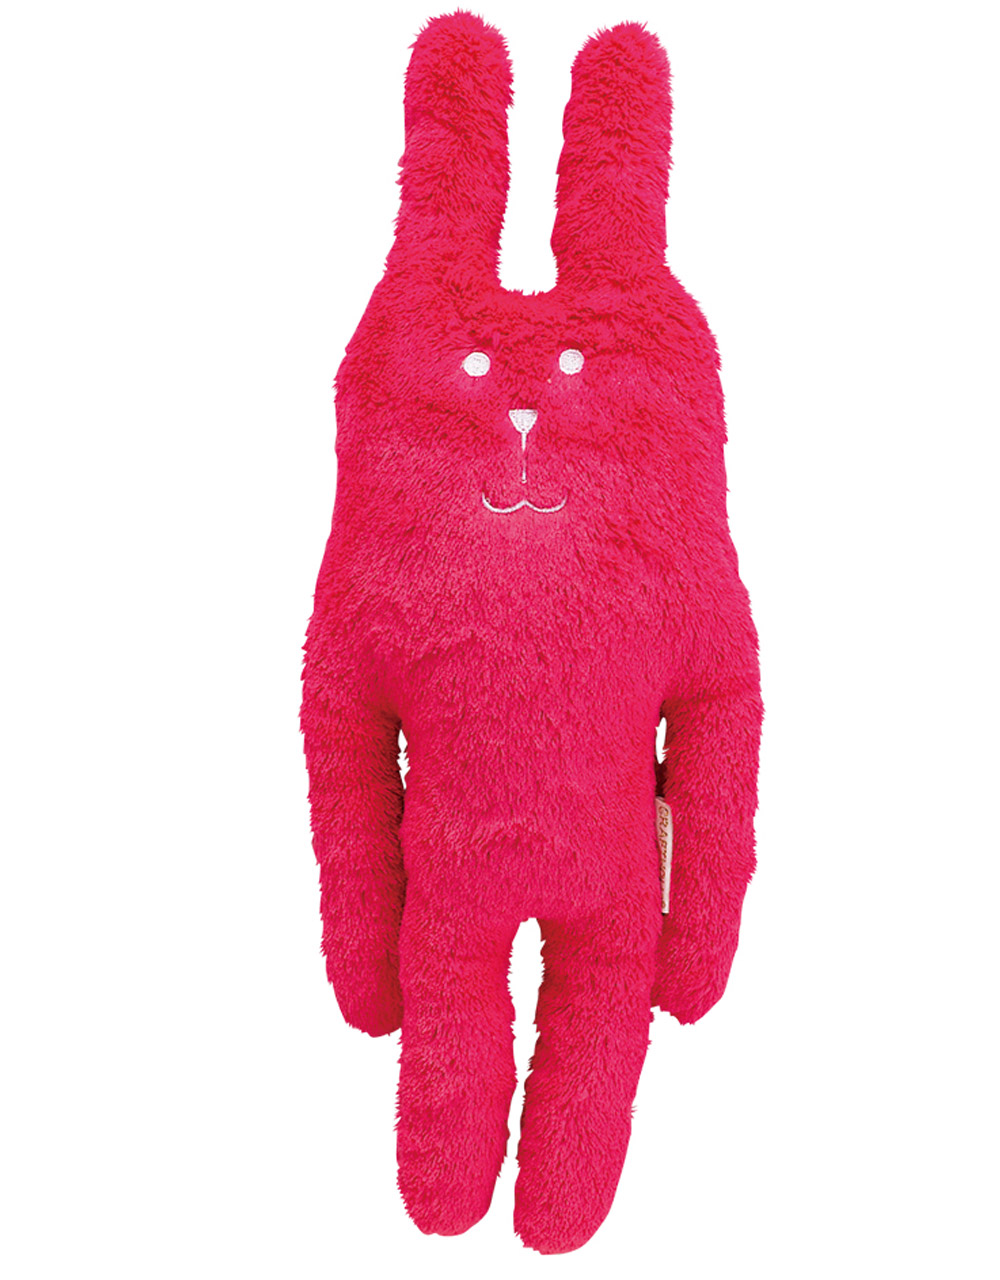 Животные, заяц, Мягкая игрушка Craftholic заяц PINK Rab, 47см,  - купить со скидкой